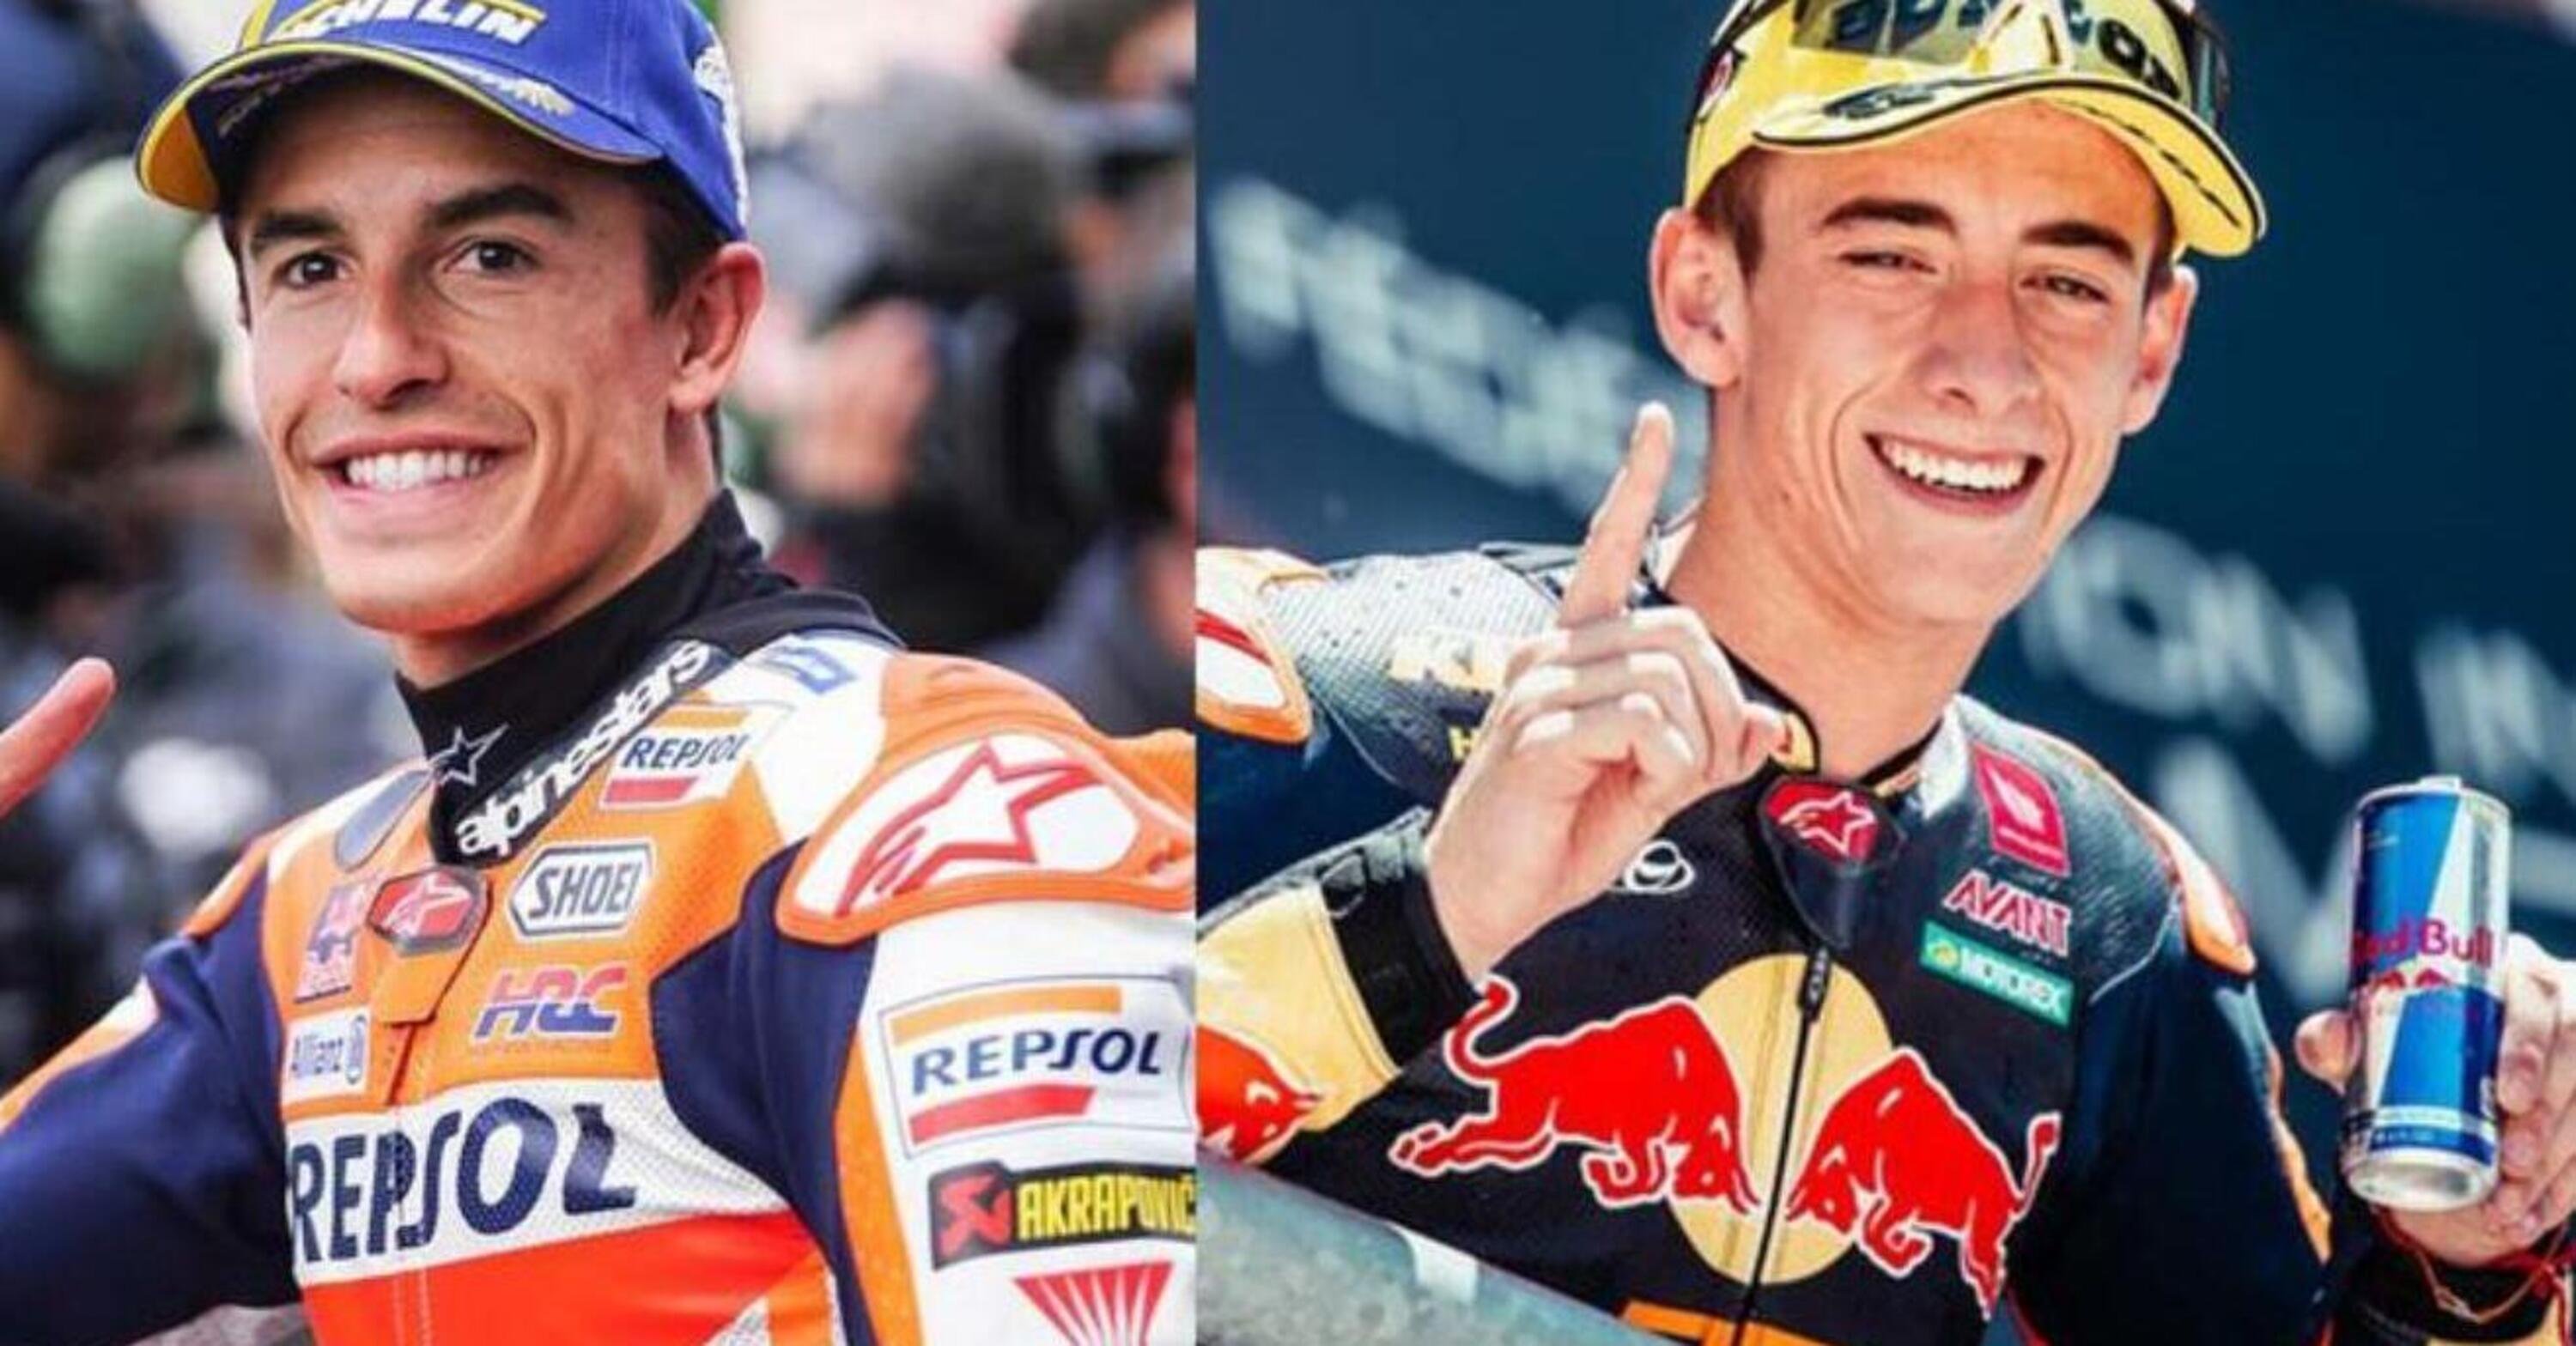 Nico Cereghini: &ldquo;Marquez (e Acosta), pepe sulla MotoGP&rdquo;